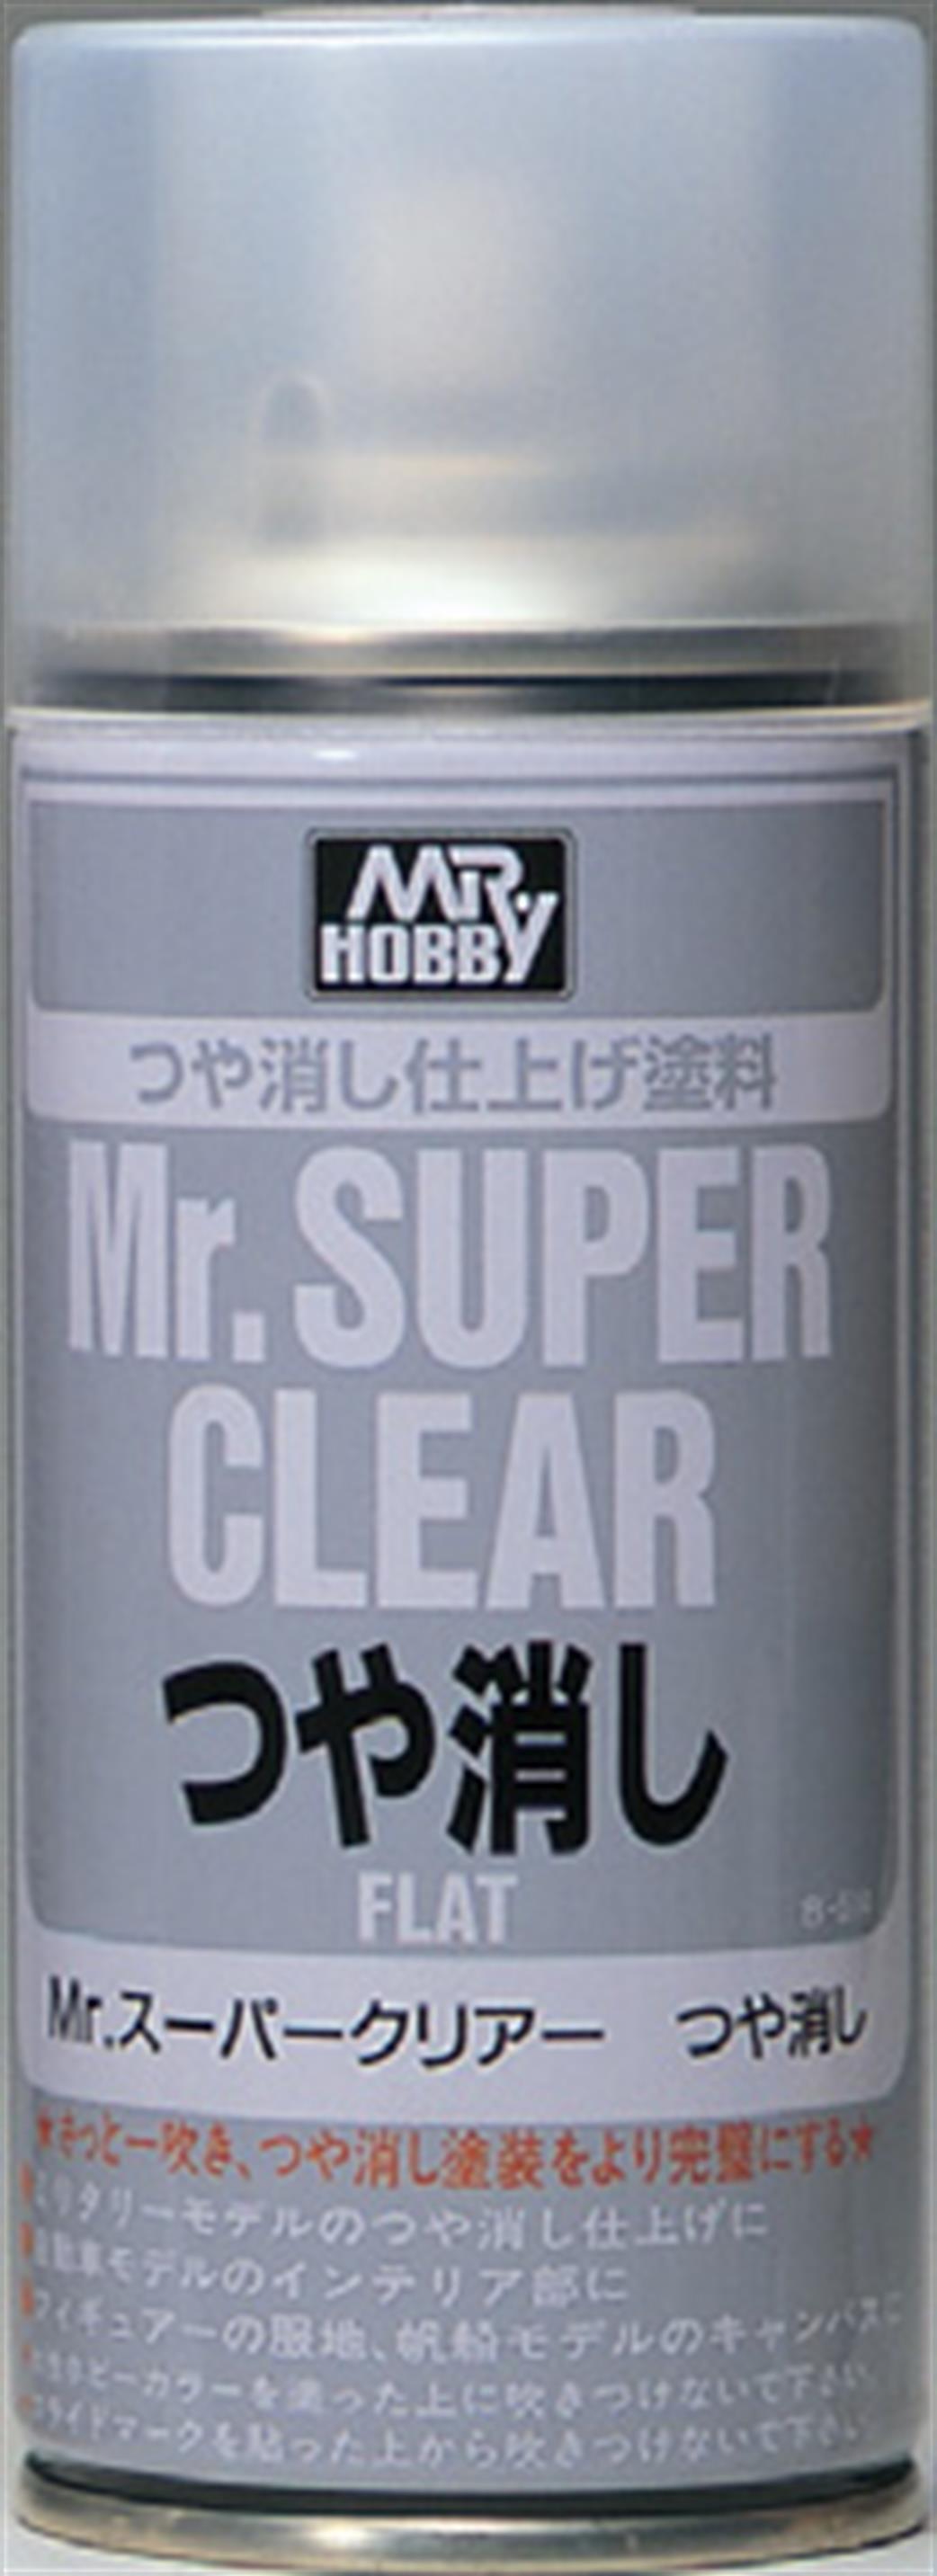 Gunze Sangyo  B-514 Mr Super Clear Matt